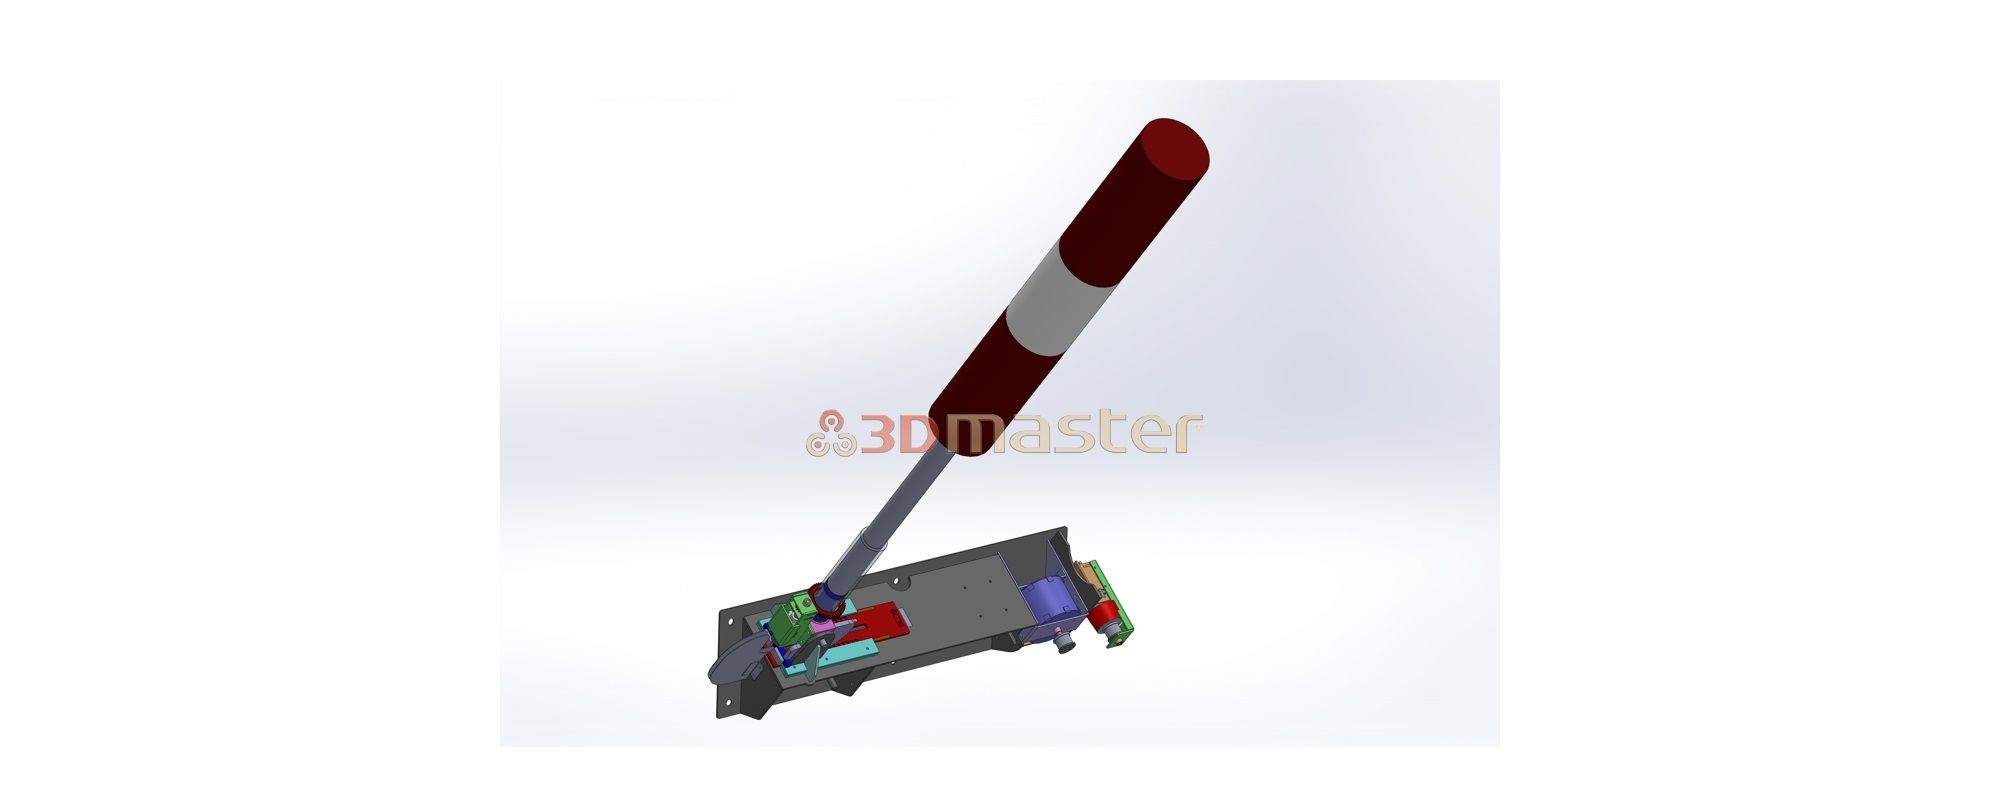 Electronic flagpole - 3DMaster